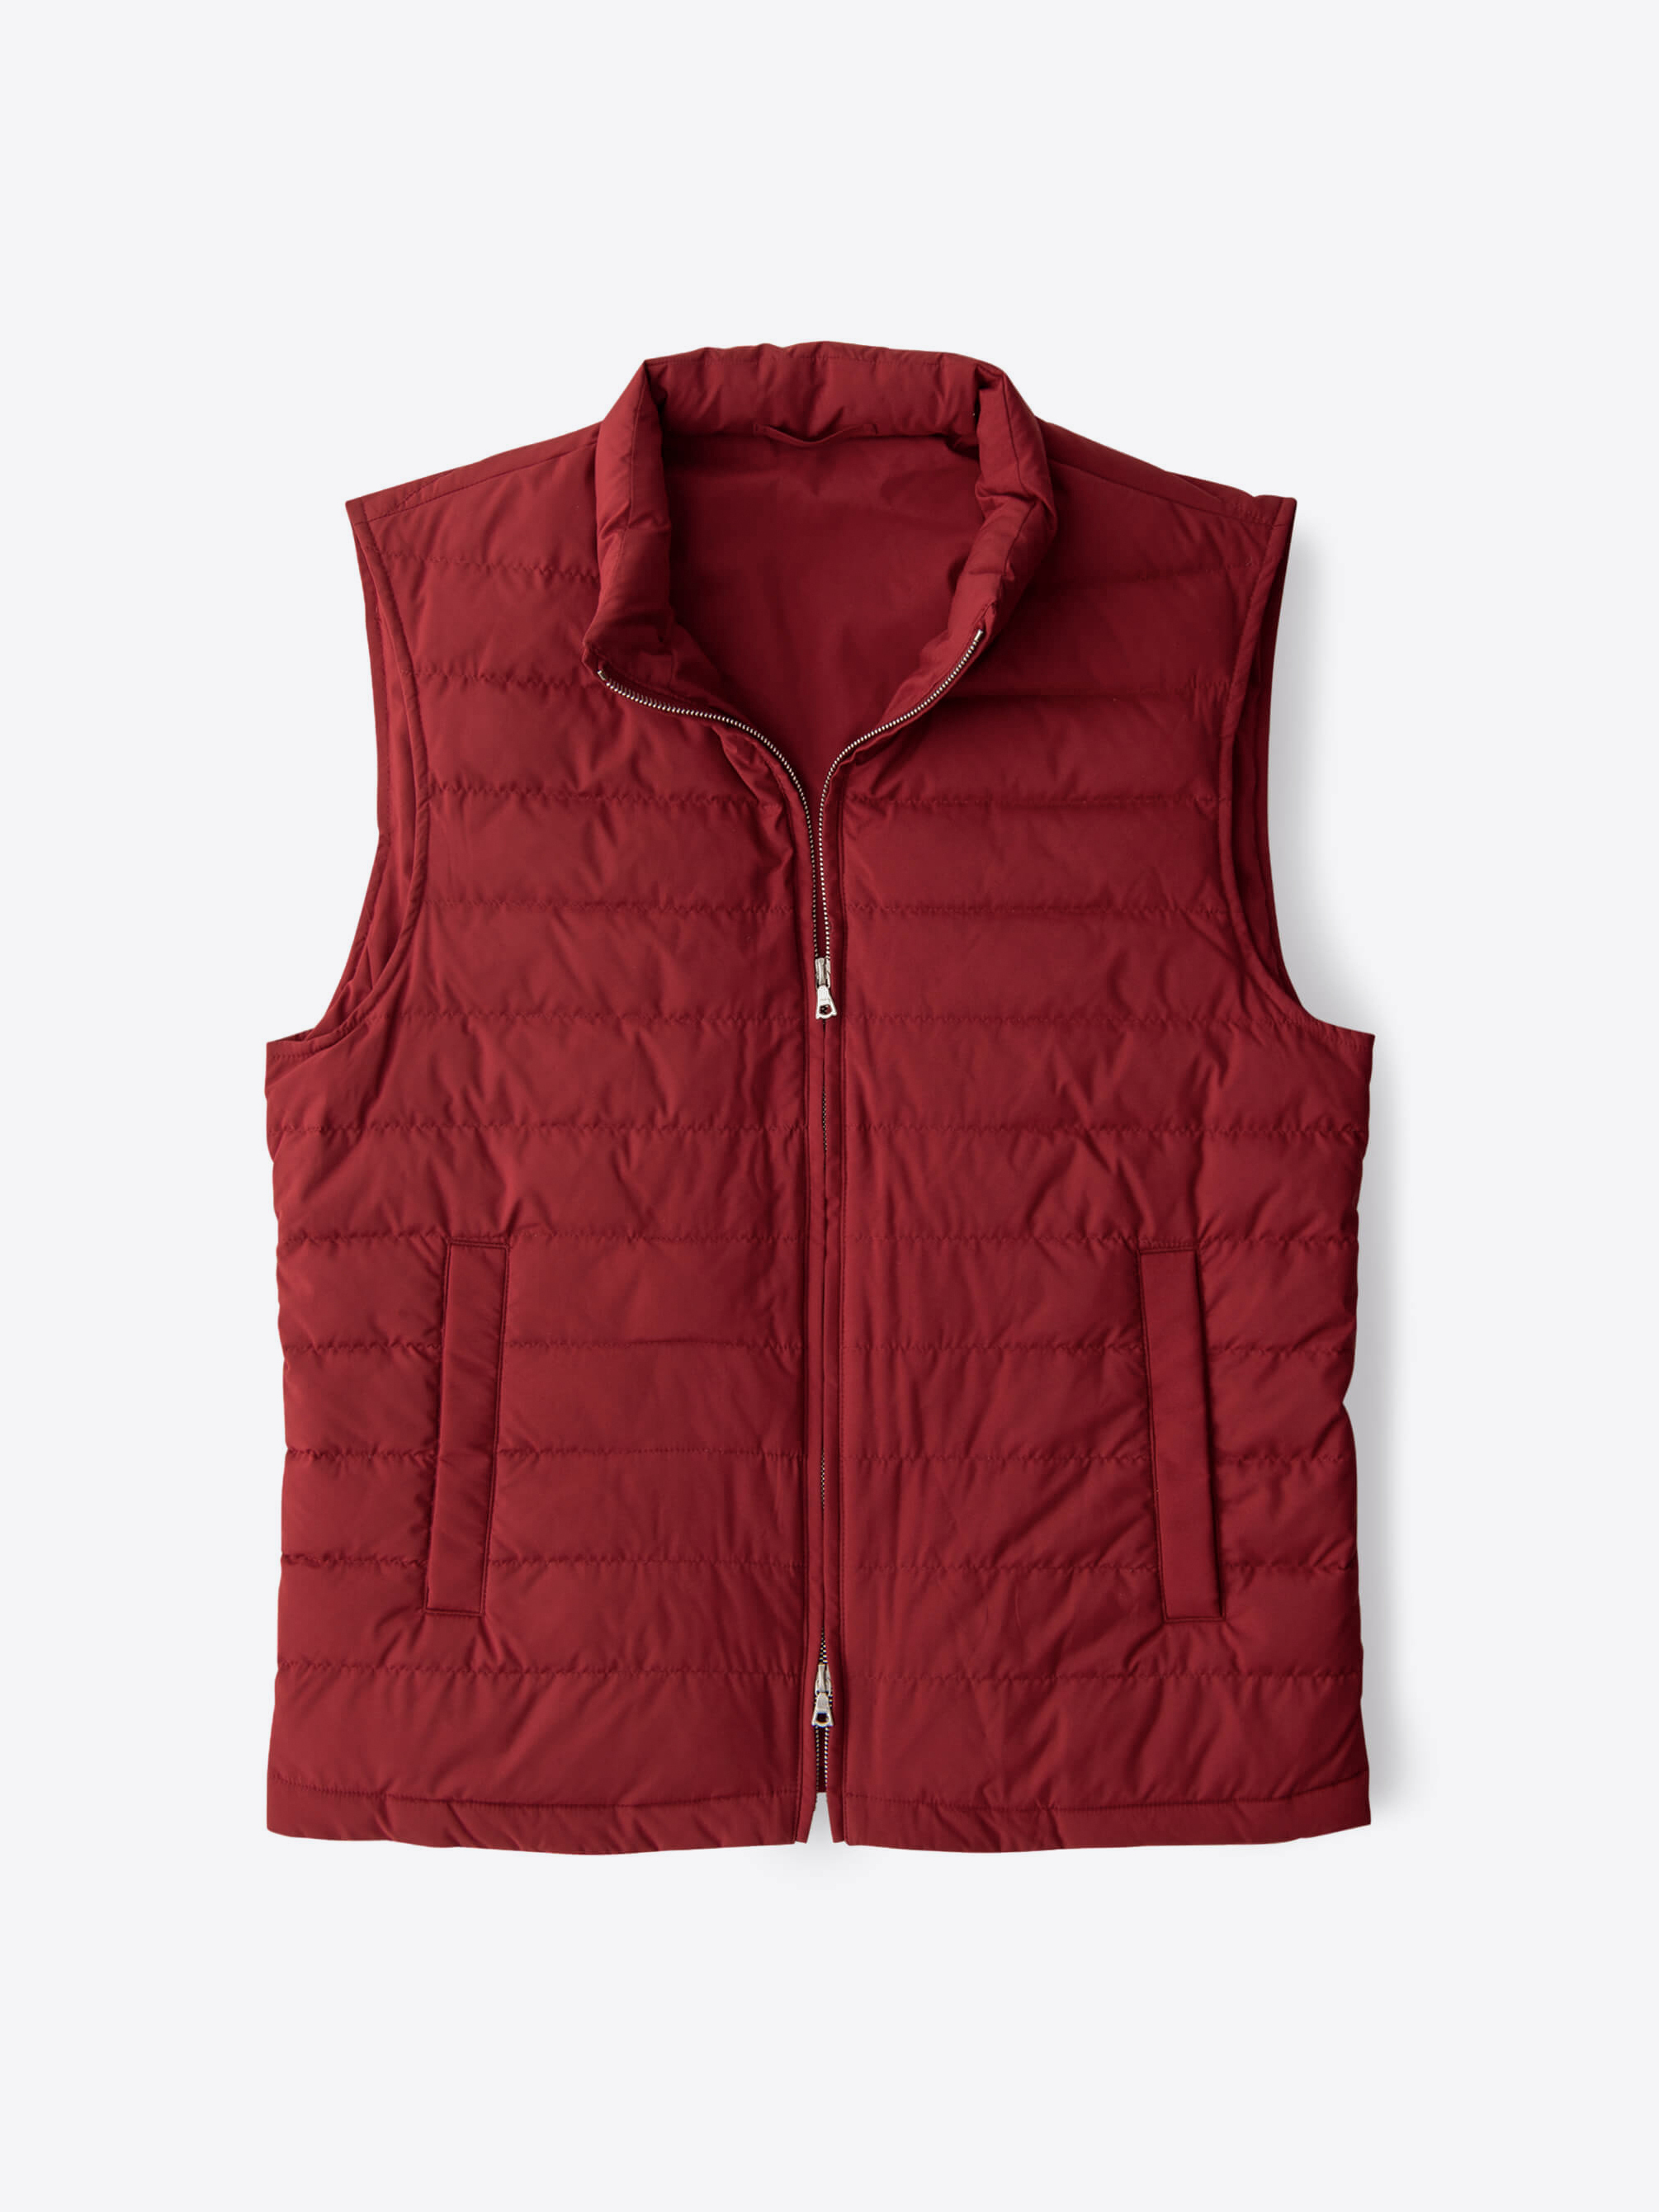 Zoom Image of Brera Red Performance Zip Vest